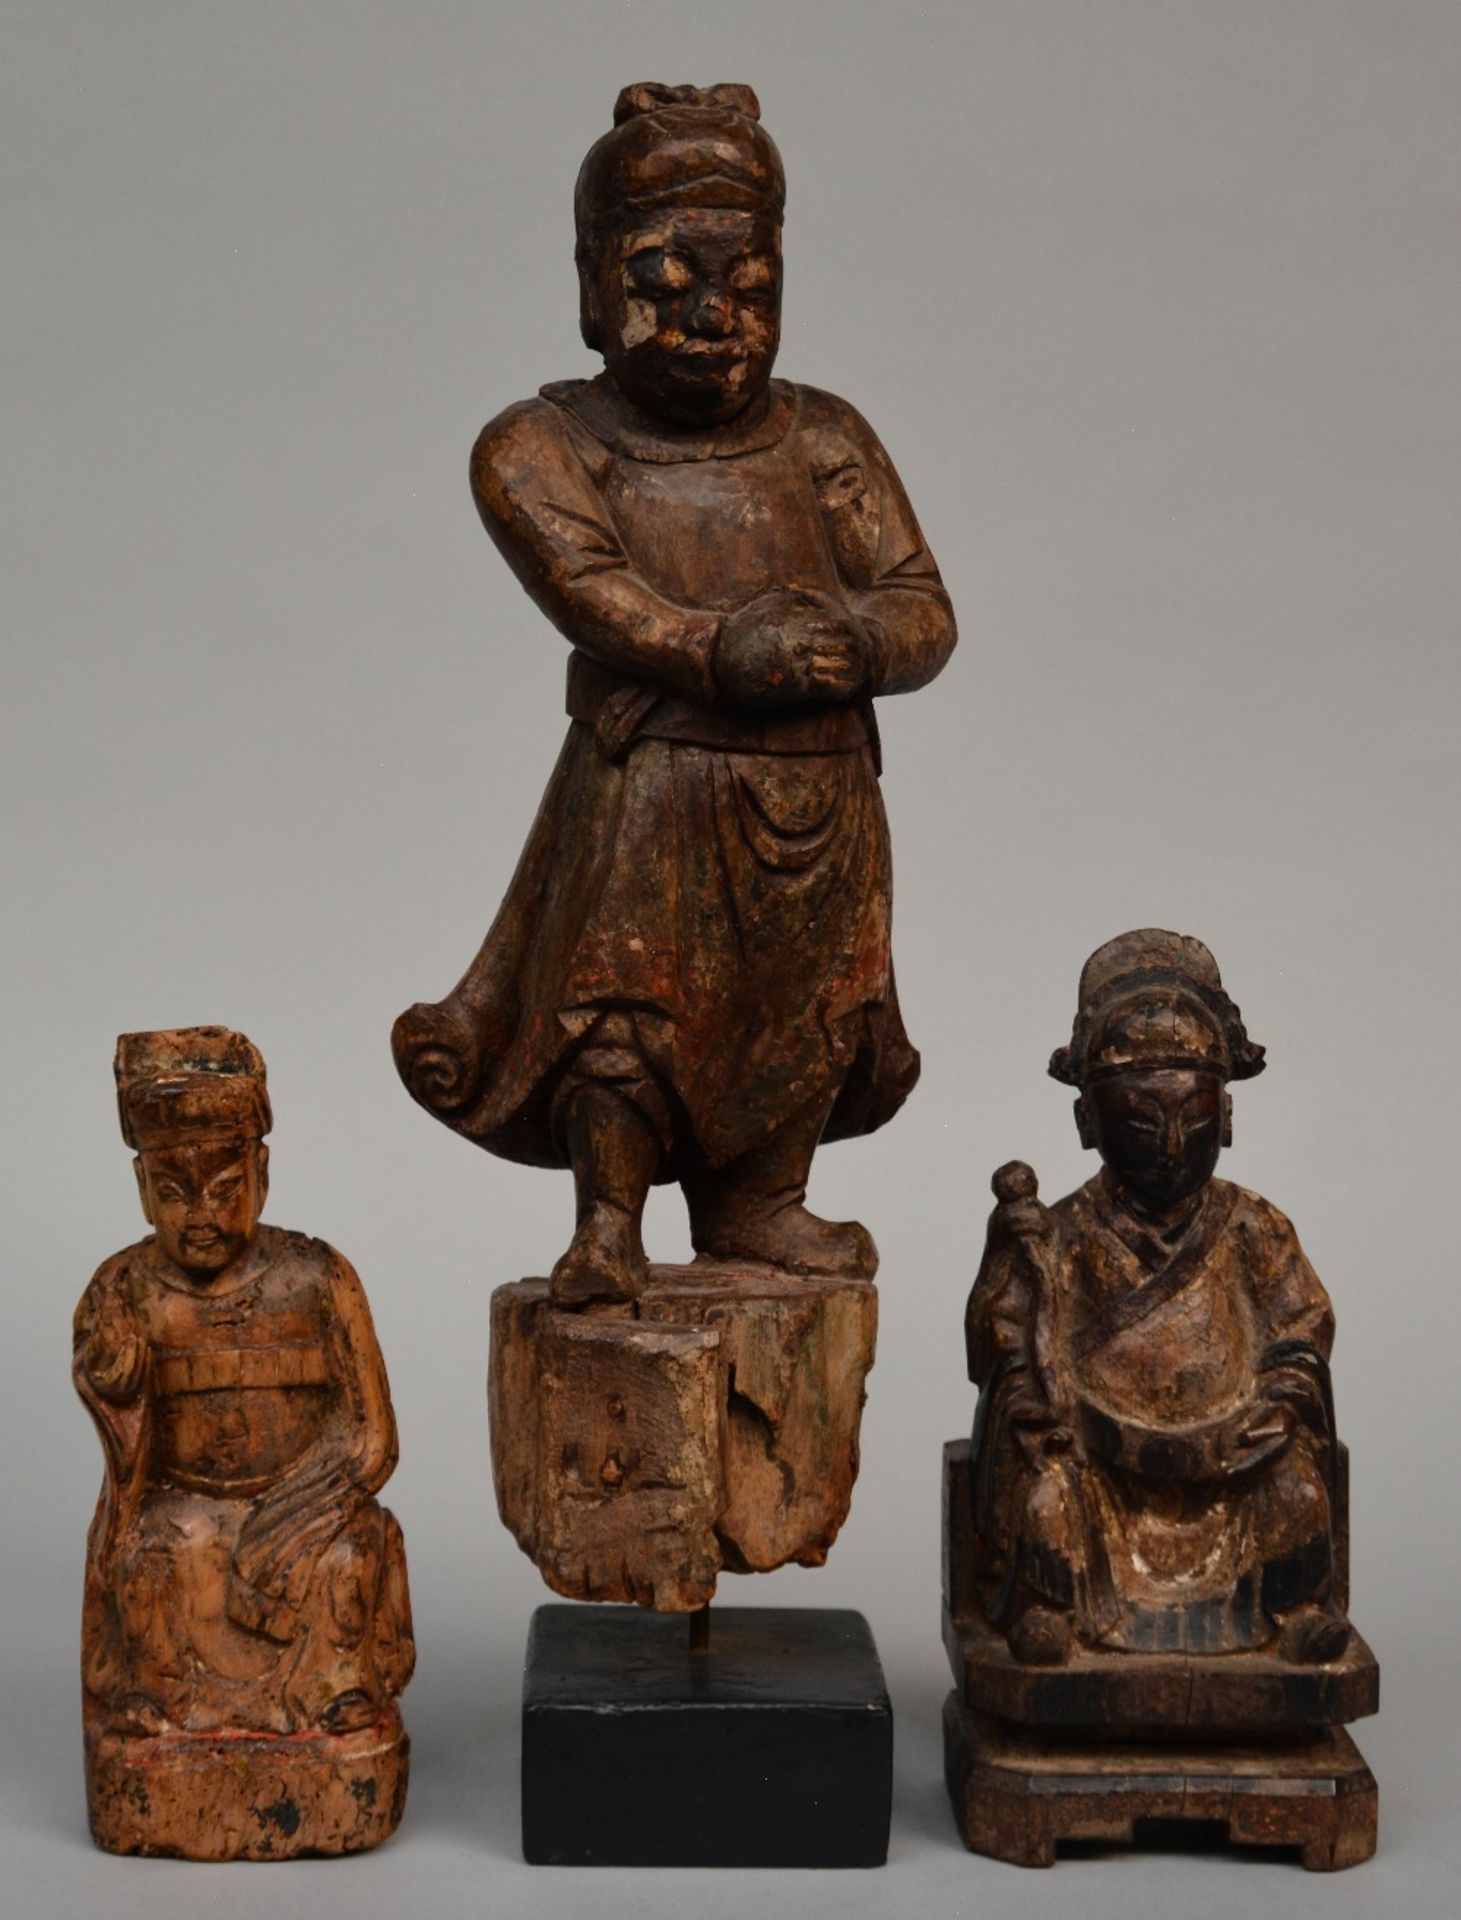 Three Oriental carved wooden sculptures, 19thC, H 24,5 - 27,5 - 52 cm